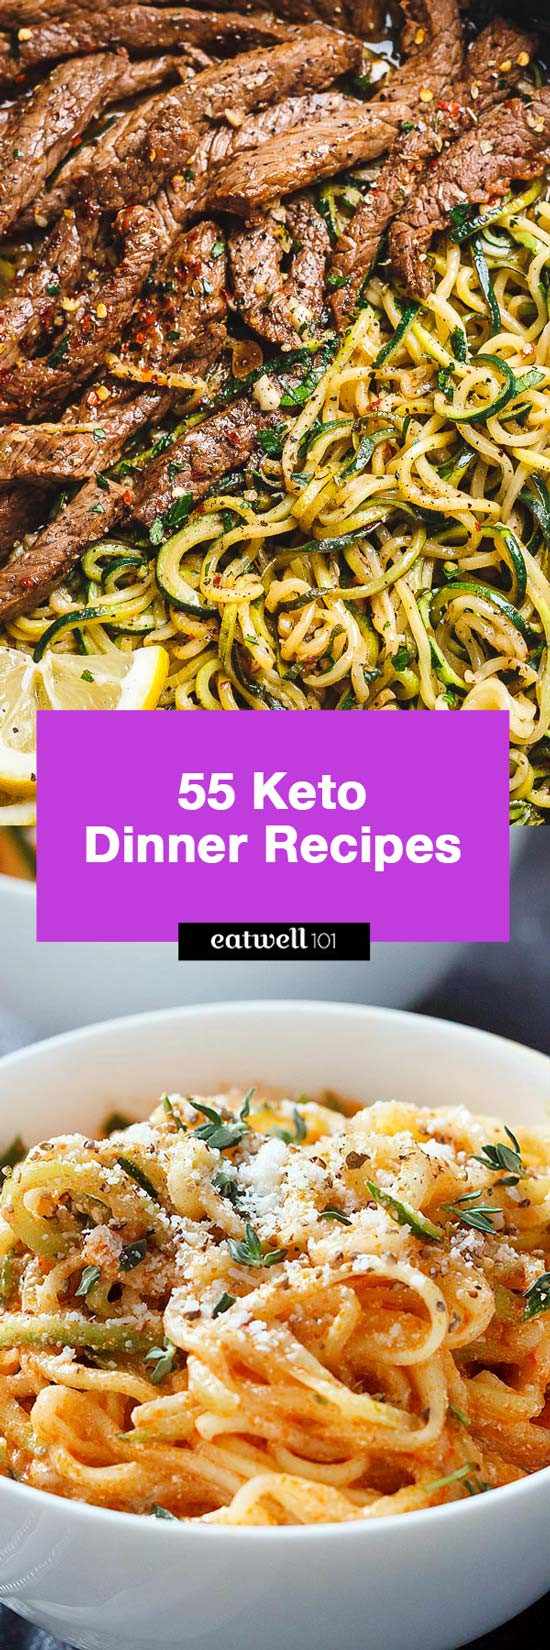 Easy Keto Dinner Ideas
 Easy Keto Dinner Recipes – 90 Quick Keto Dinner ideas for